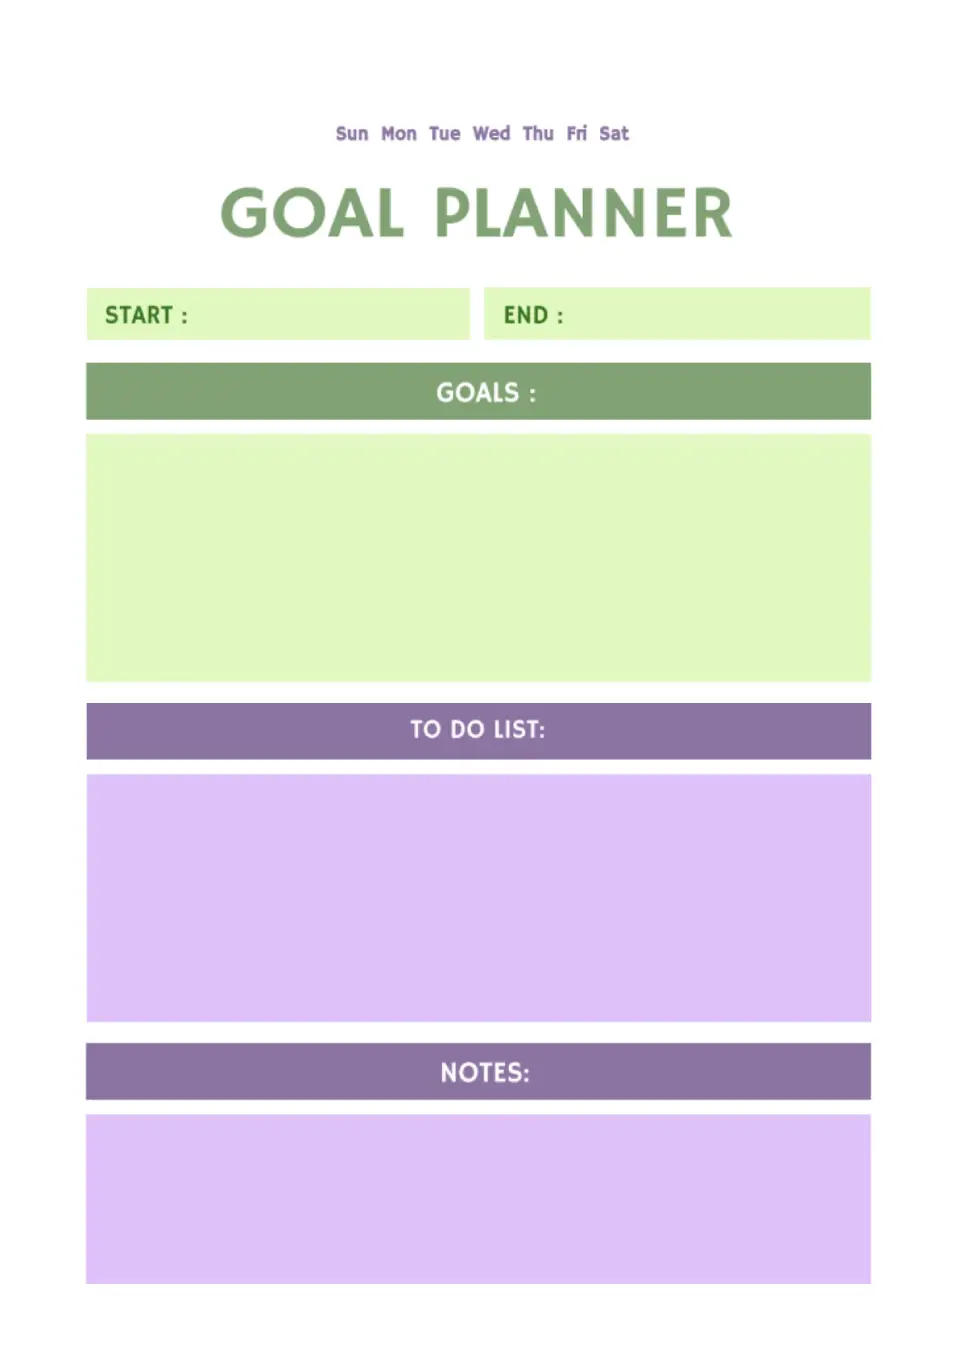 Goal Planner Template for Google Docs